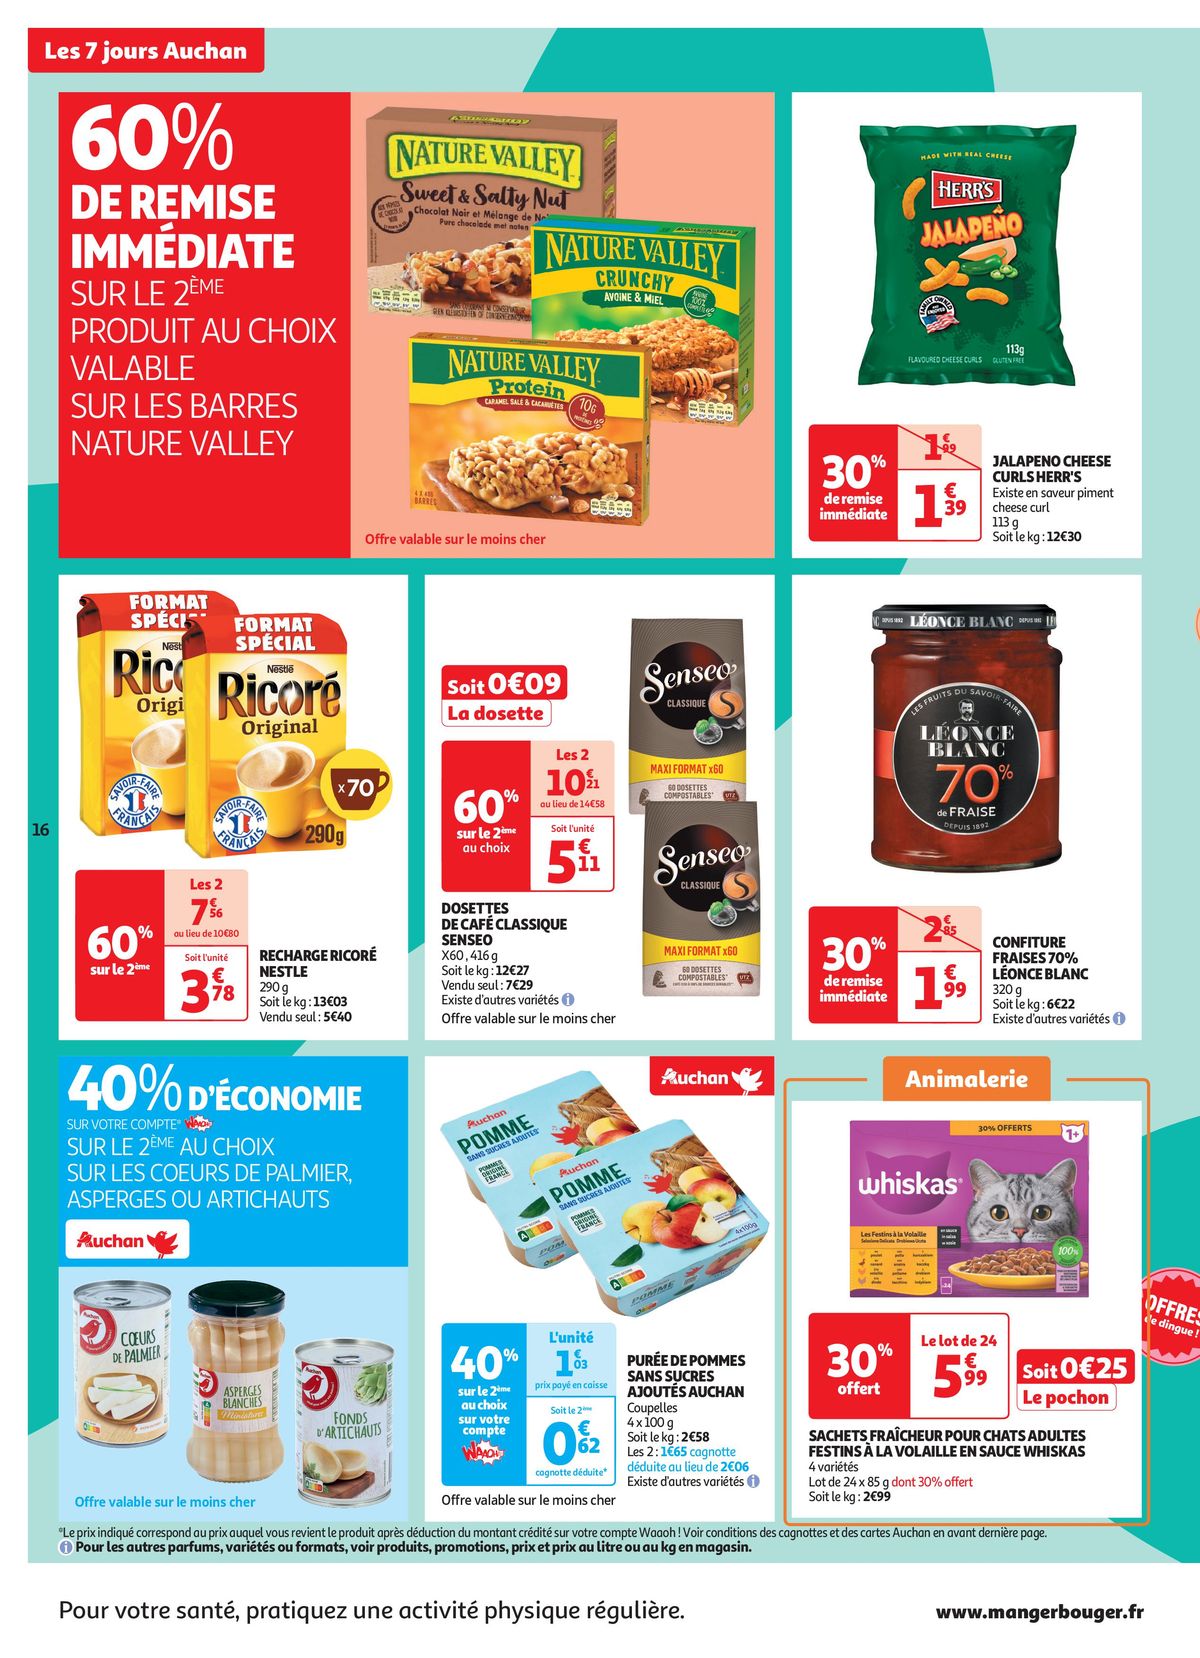 Catalogue C'est les 7 jours Auchan dans votre super !, page 00016